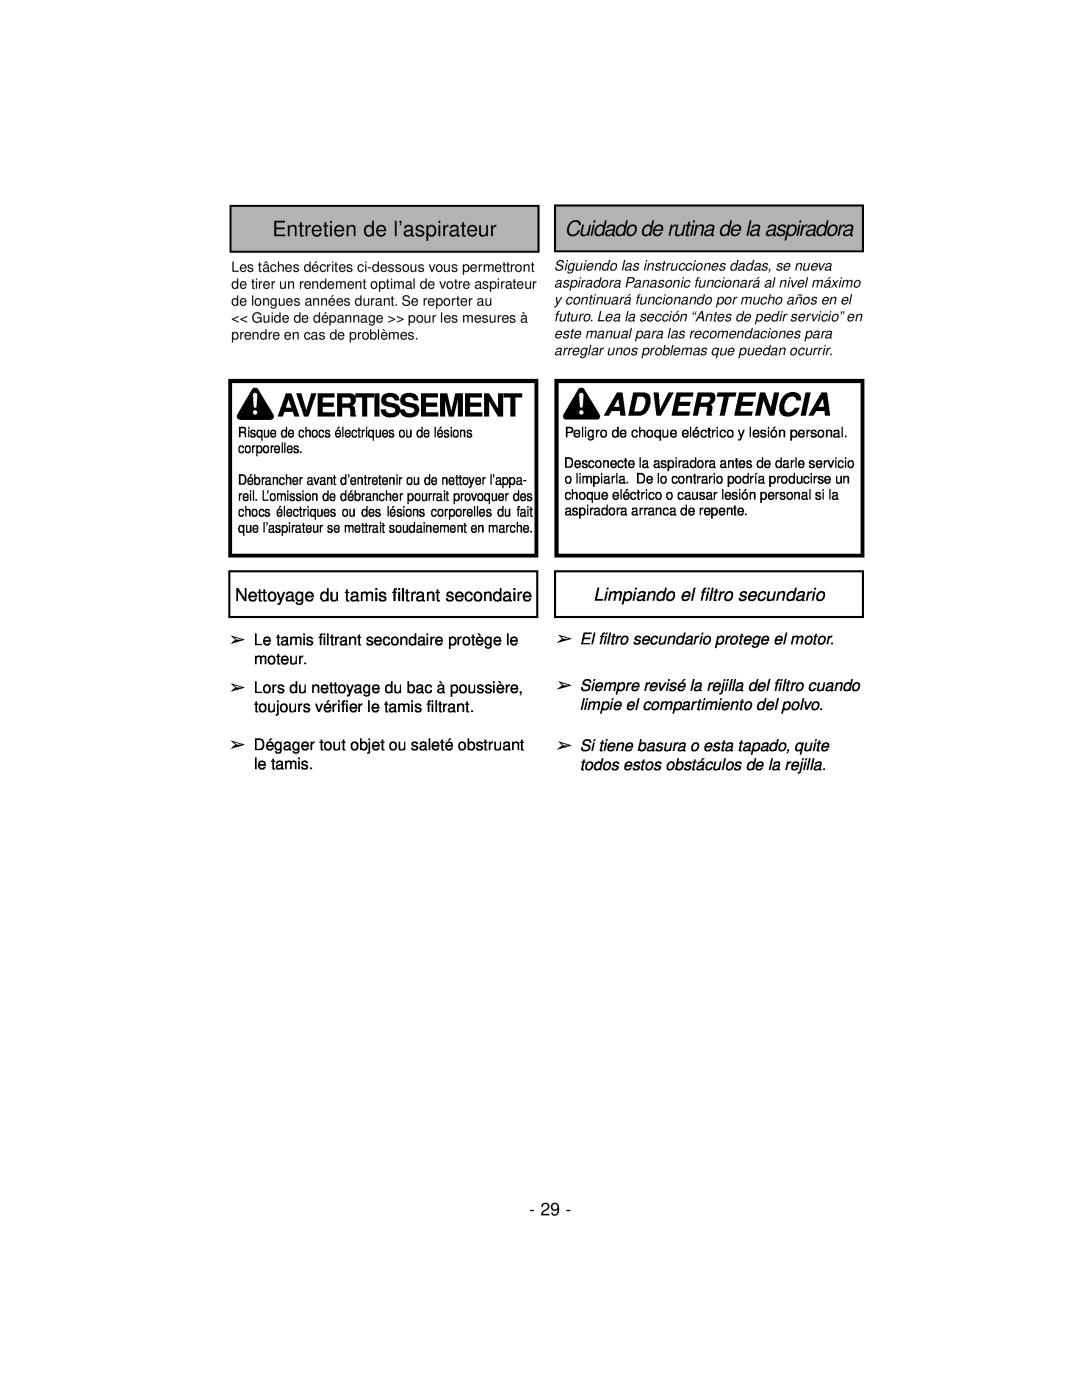 Panasonic MC-V7600 Avertissement, Advertencia, Entretien de l’aspirateur, Cuidado de rutina de la aspiradora 